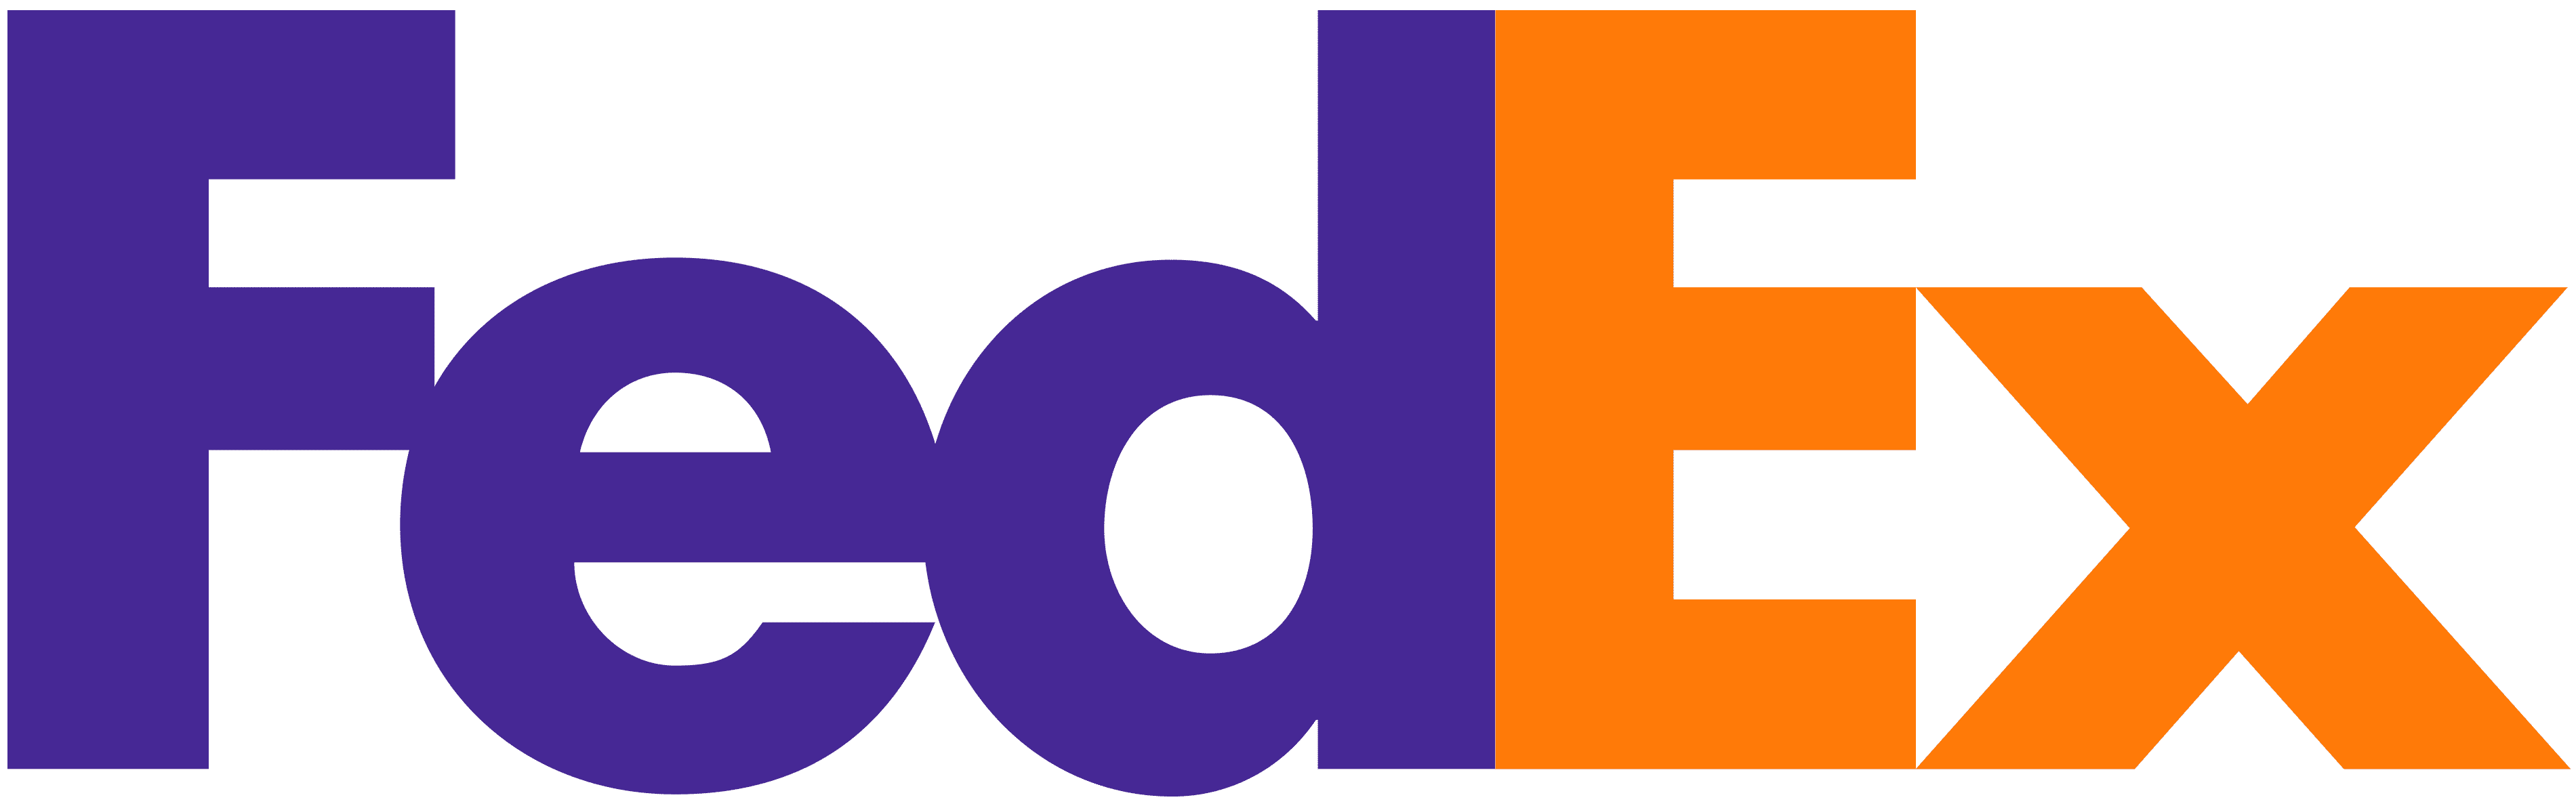 Fedex-logo.png